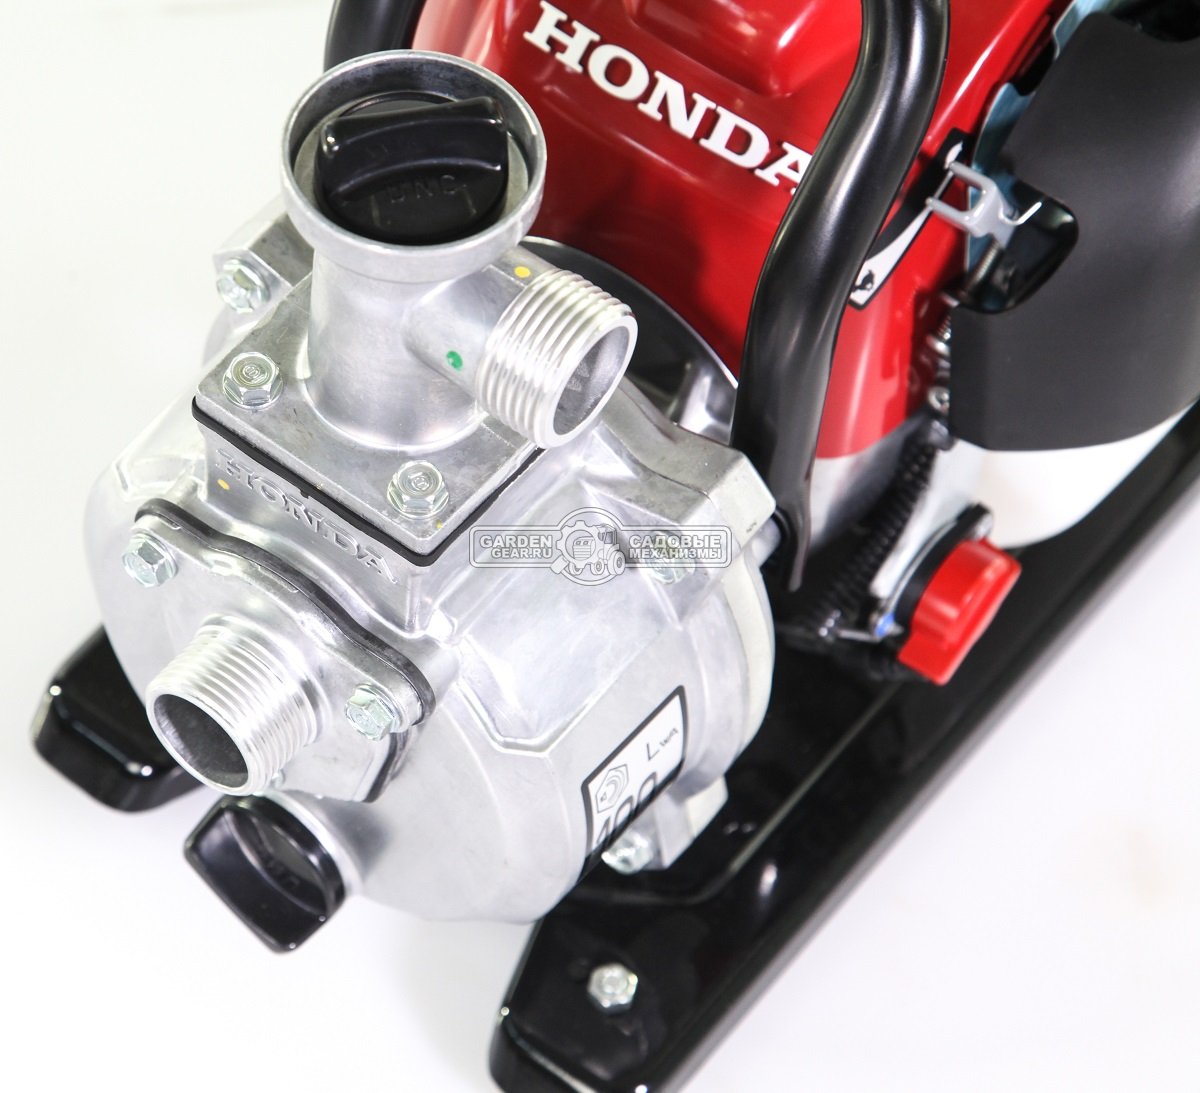 Мотопомпа бензиновая Honda WX10T E1 для чистой воды (THA, Honda, GX25, 25 куб.см., 120 л/мин, 1&quot;, 37 м, 6,1 кг.)